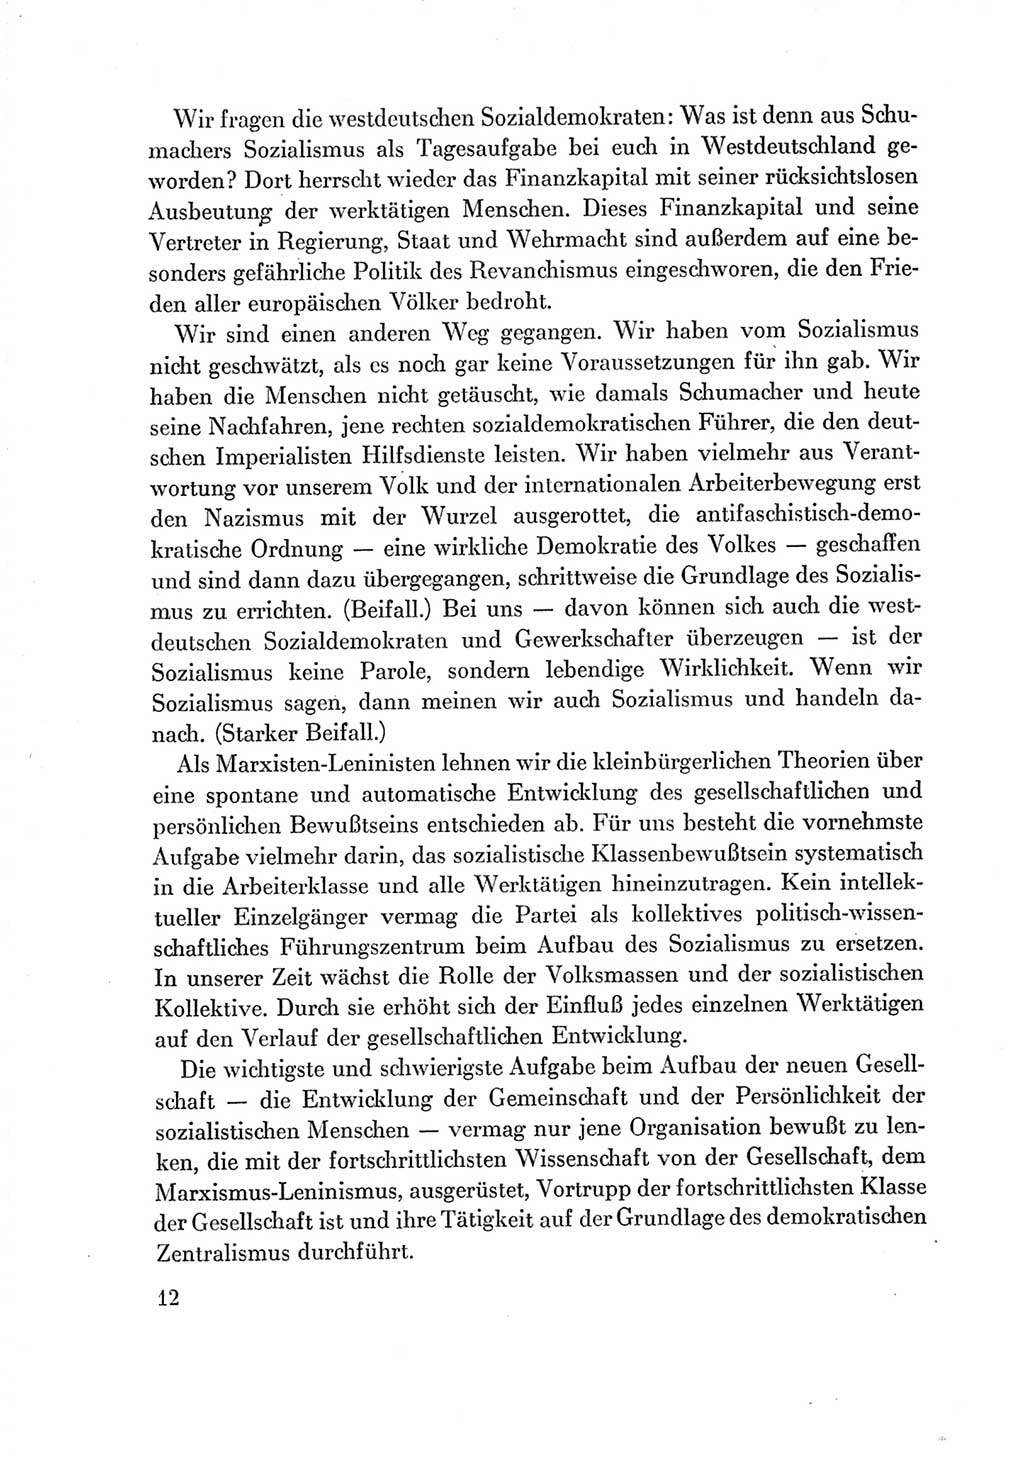 Protokoll der Verhandlungen des Ⅶ. Parteitages der Sozialistischen Einheitspartei Deutschlands (SED) [Deutsche Demokratische Republik (DDR)] 1967, Band Ⅱ, Seite 12 (Prot. Verh. Ⅶ. PT SED DDR 1967, Bd. Ⅱ, S. 12)